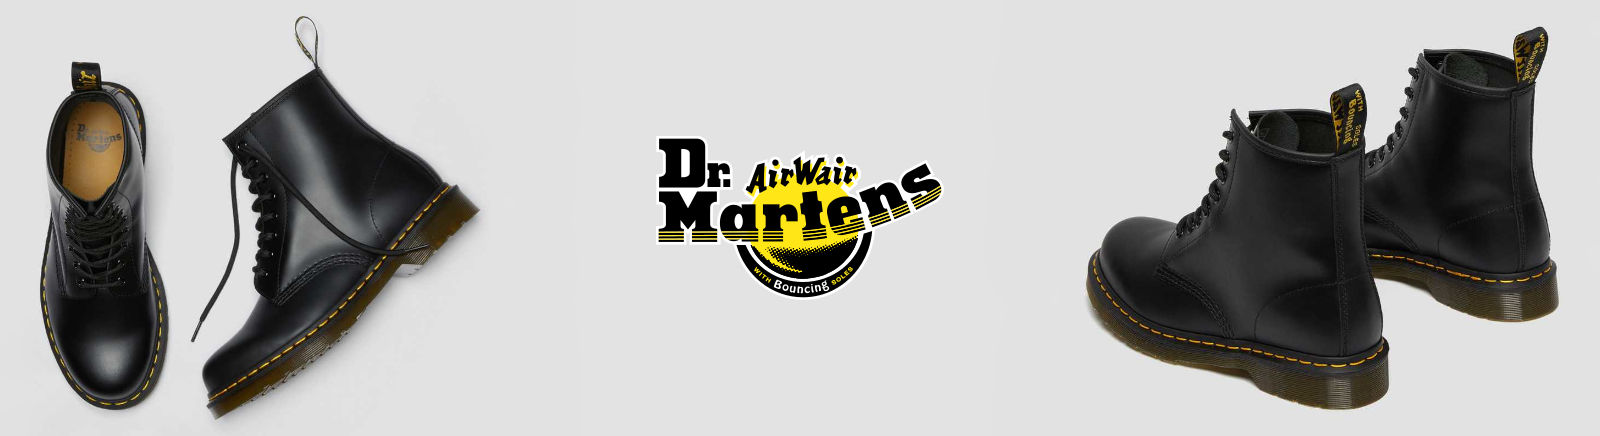 Dr. Martens Markenschuhe online kaufen im Shop von GISY